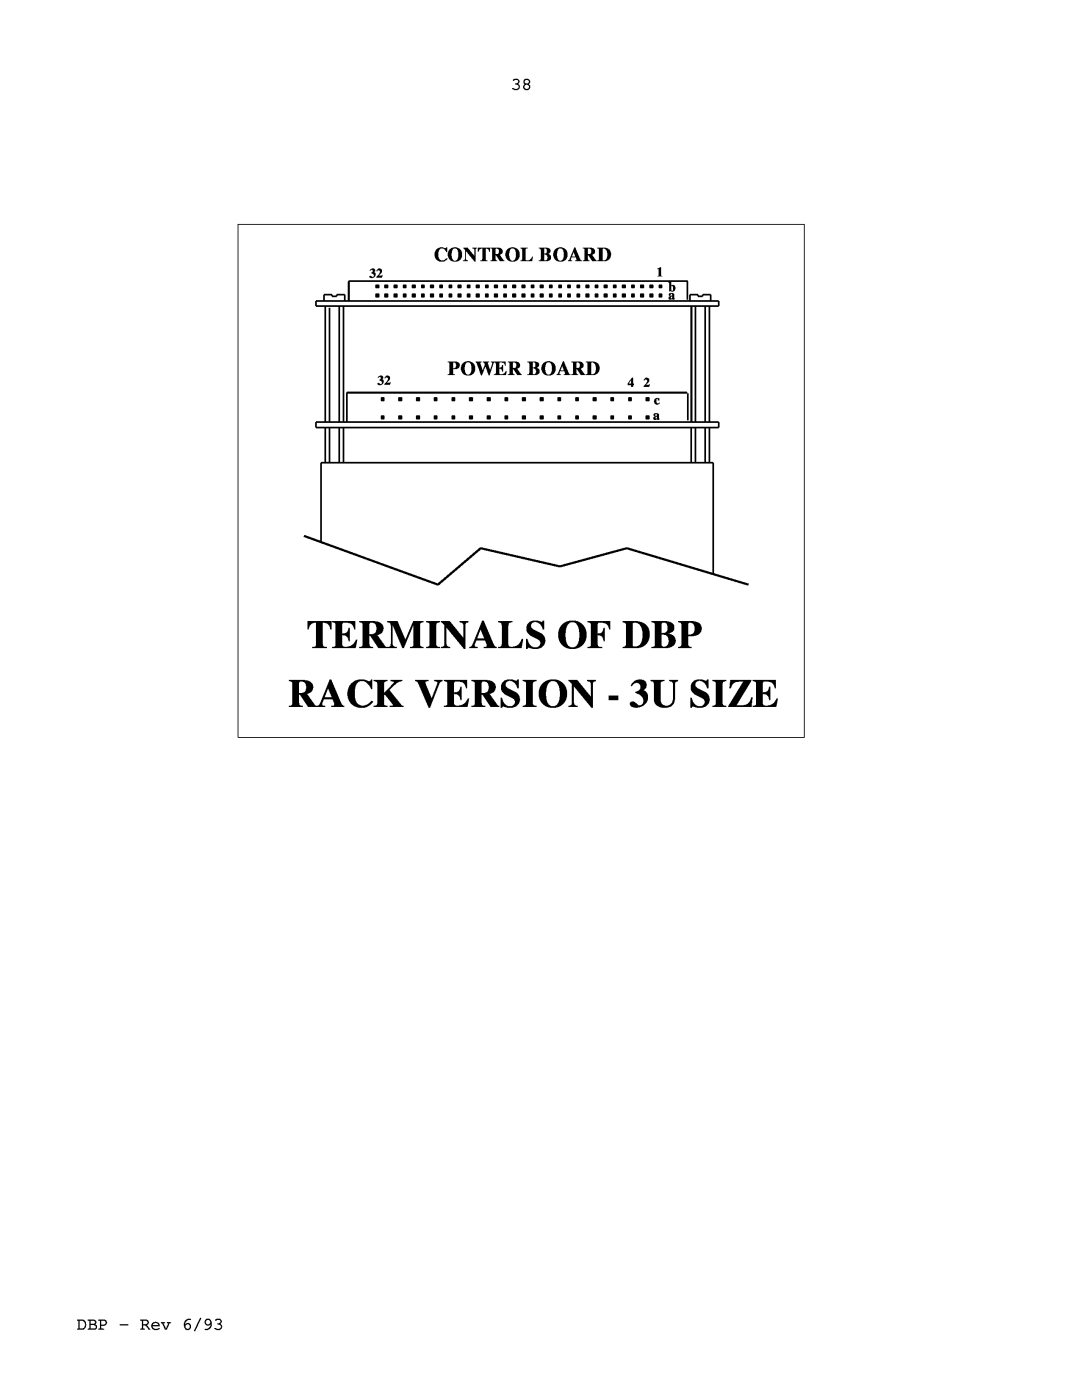 Elmo DBP SERIES manual RACK VERSION - 3U SIZE, Terminals Of Dbp, Control Board, Power Board 